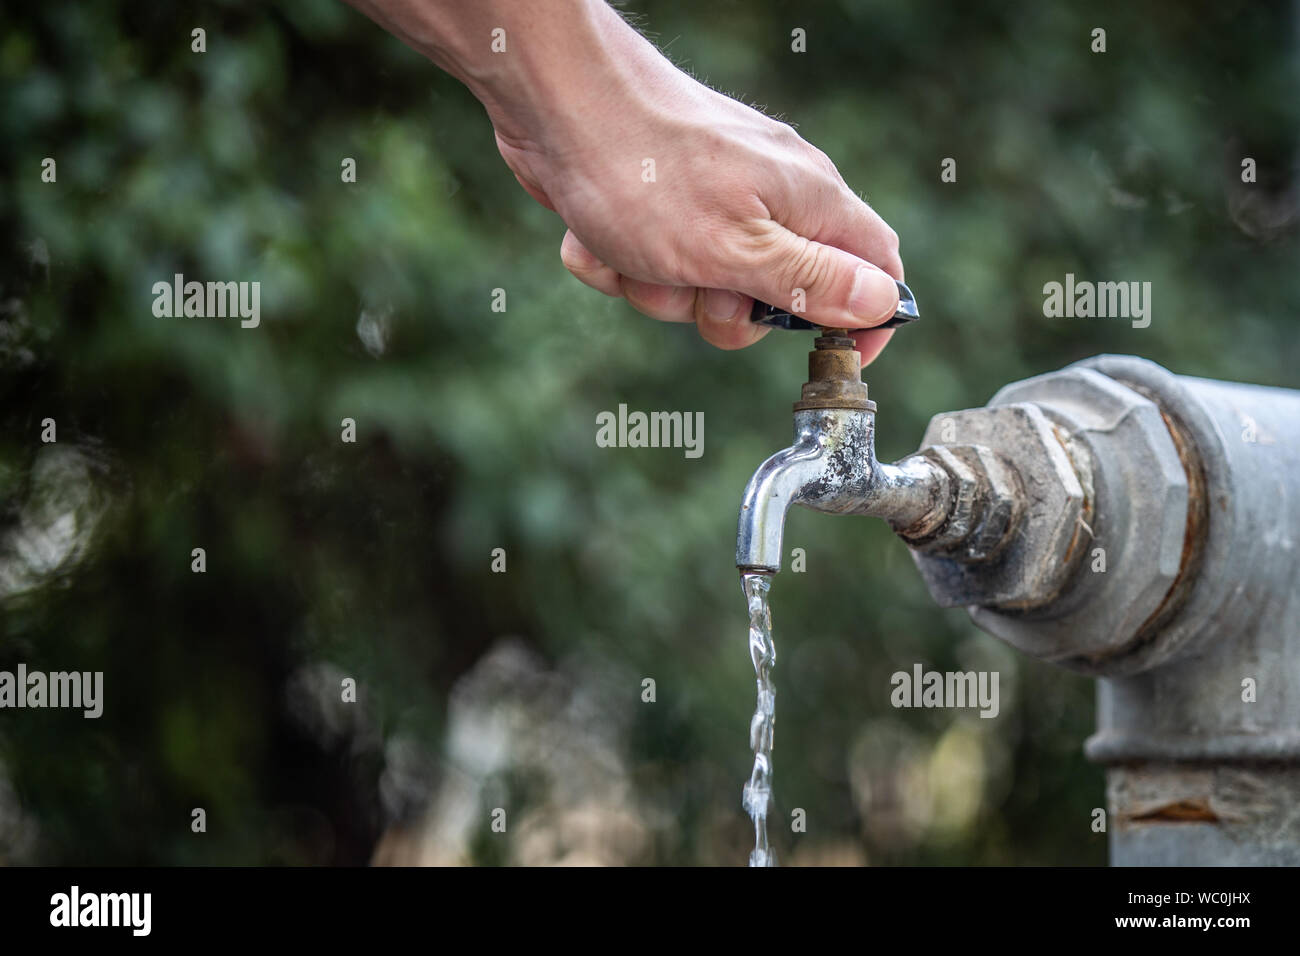 L'ouverture d'une main à l'eau du robinet. Banque D'Images